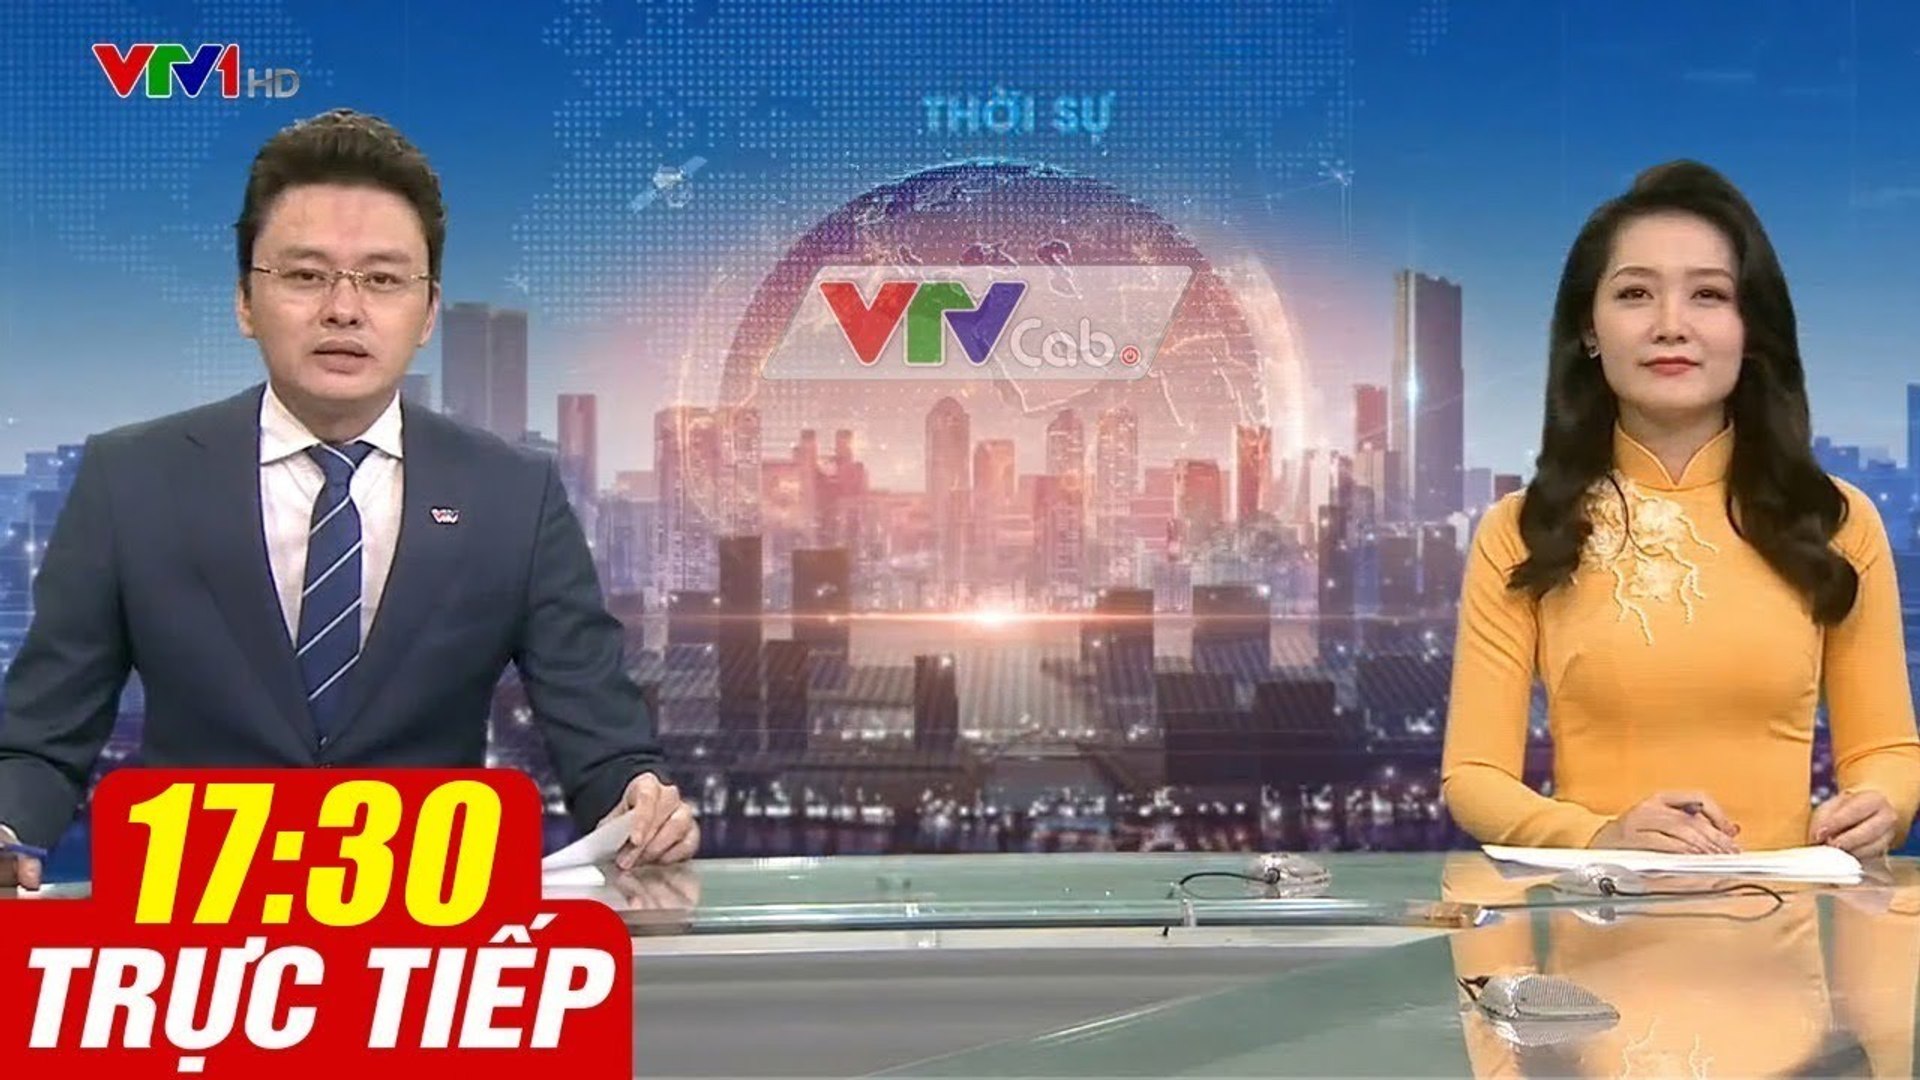 Trực Tiếp VIỆT NAM HÔM NAY 17h30 ngày 22.08.2020  Tin tức thời sự VTV1 mới nhất hôm nay